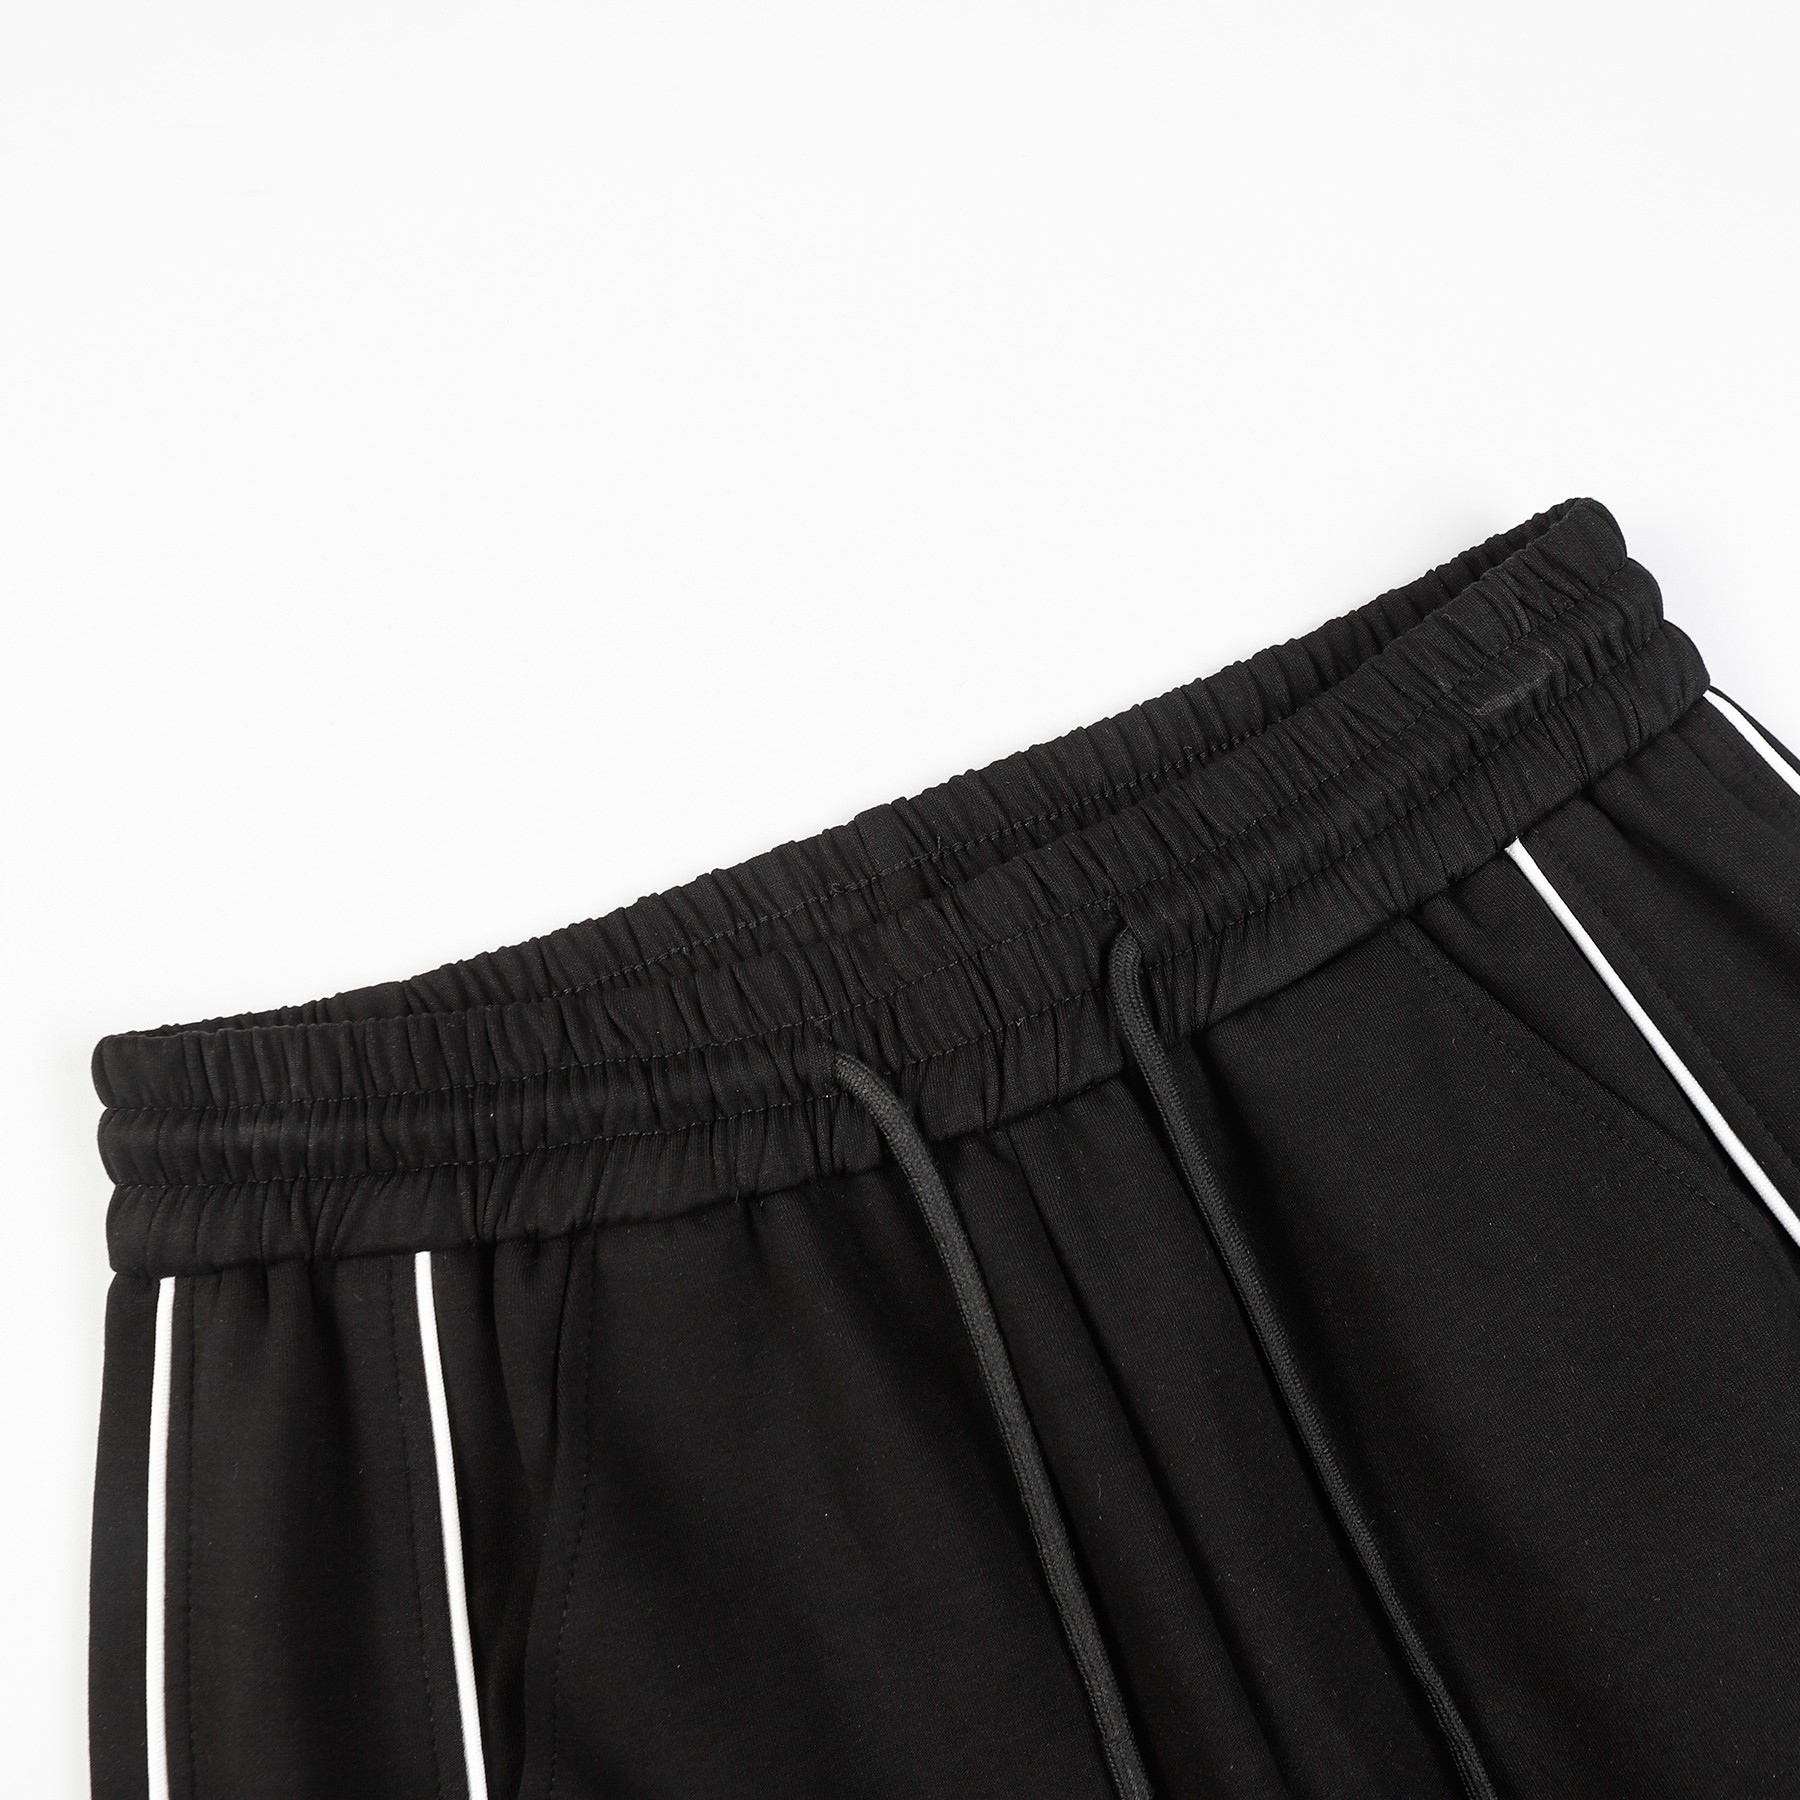 Replica Balenciaga double B print shorts